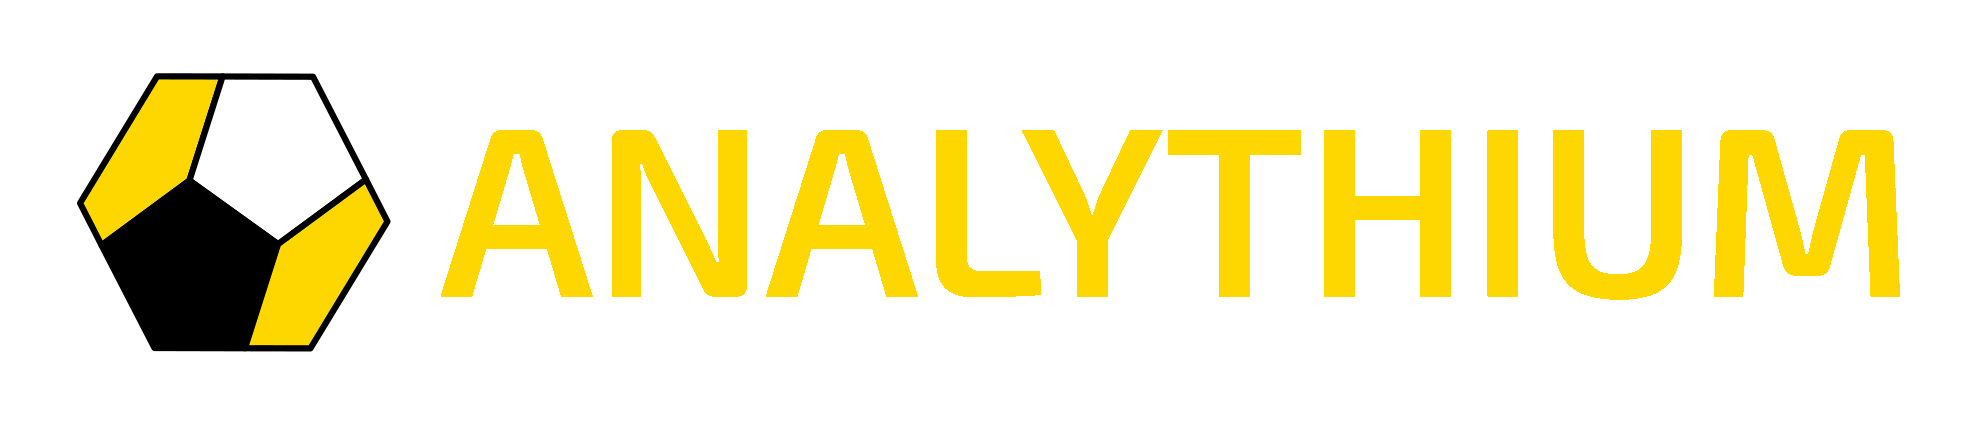 Analythium Logo